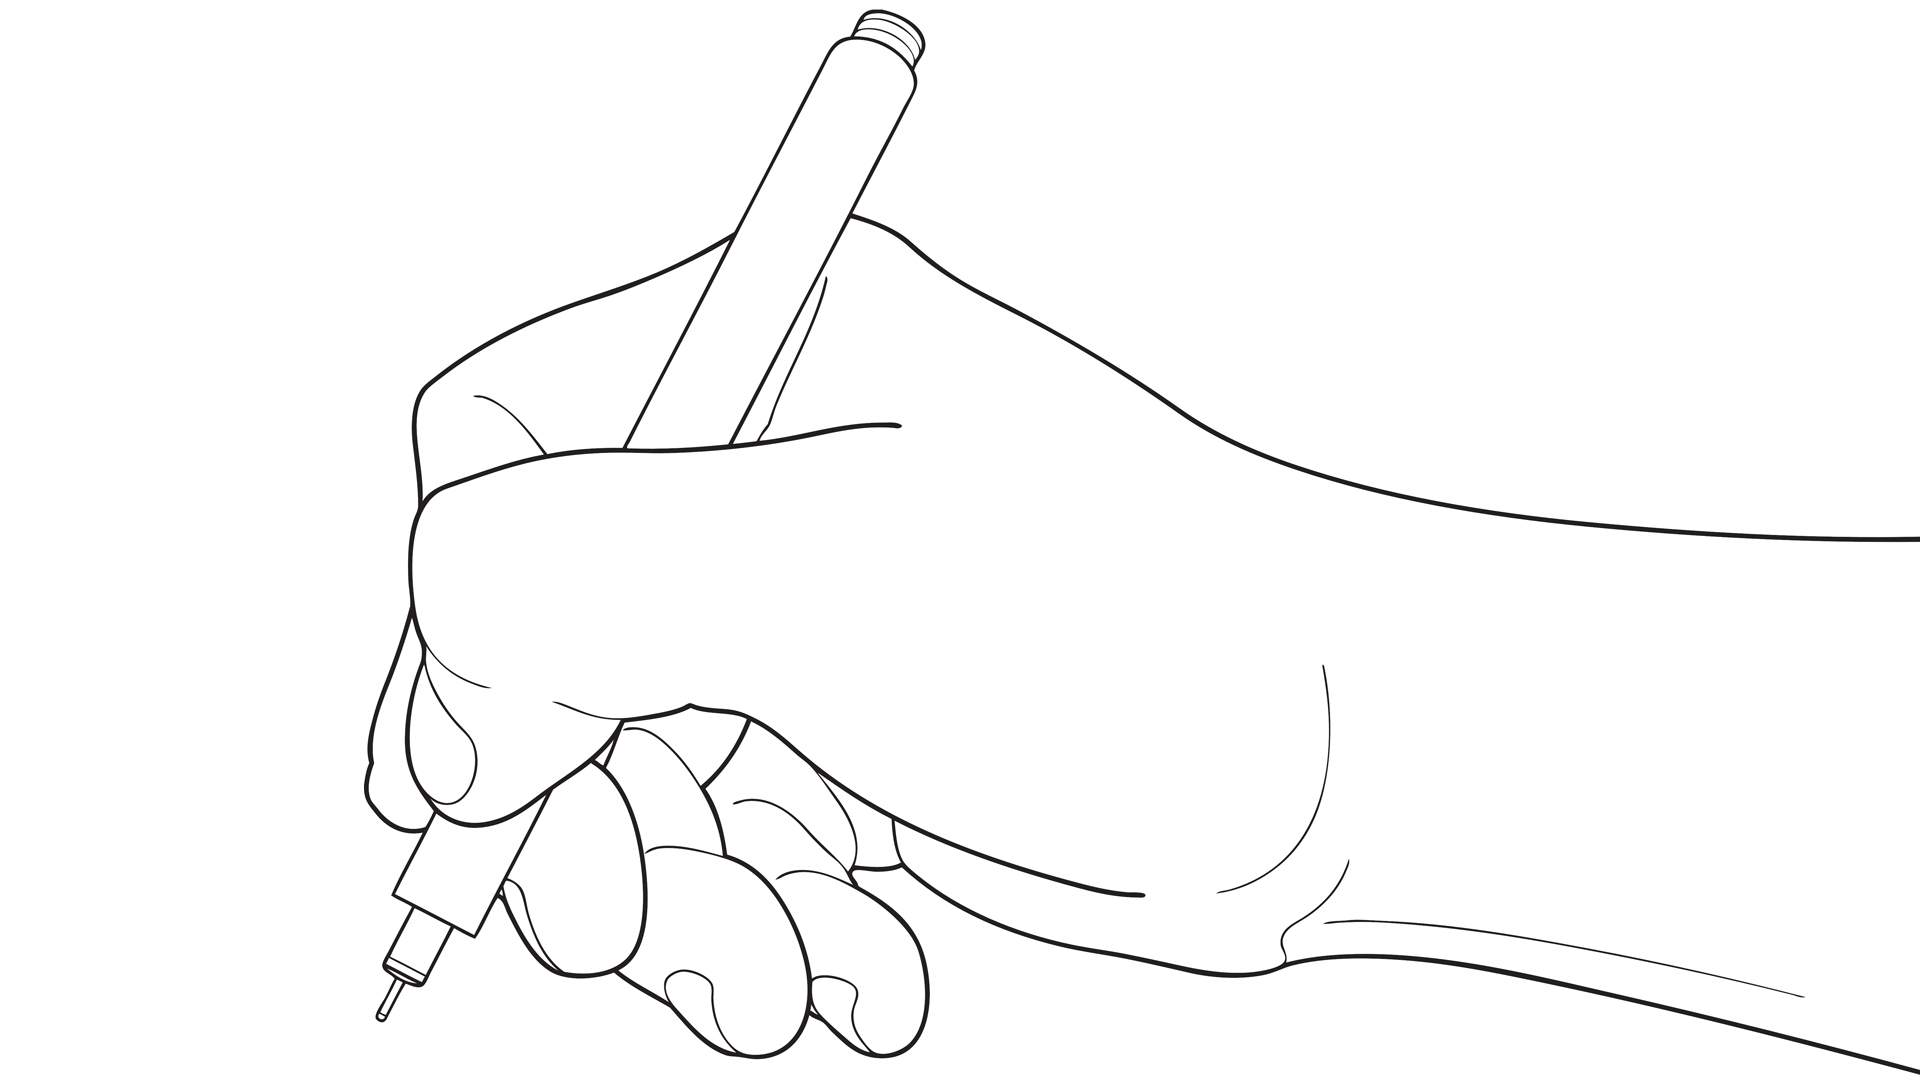 Symbolbild: Strichzeichnung einer Hand mit Stift